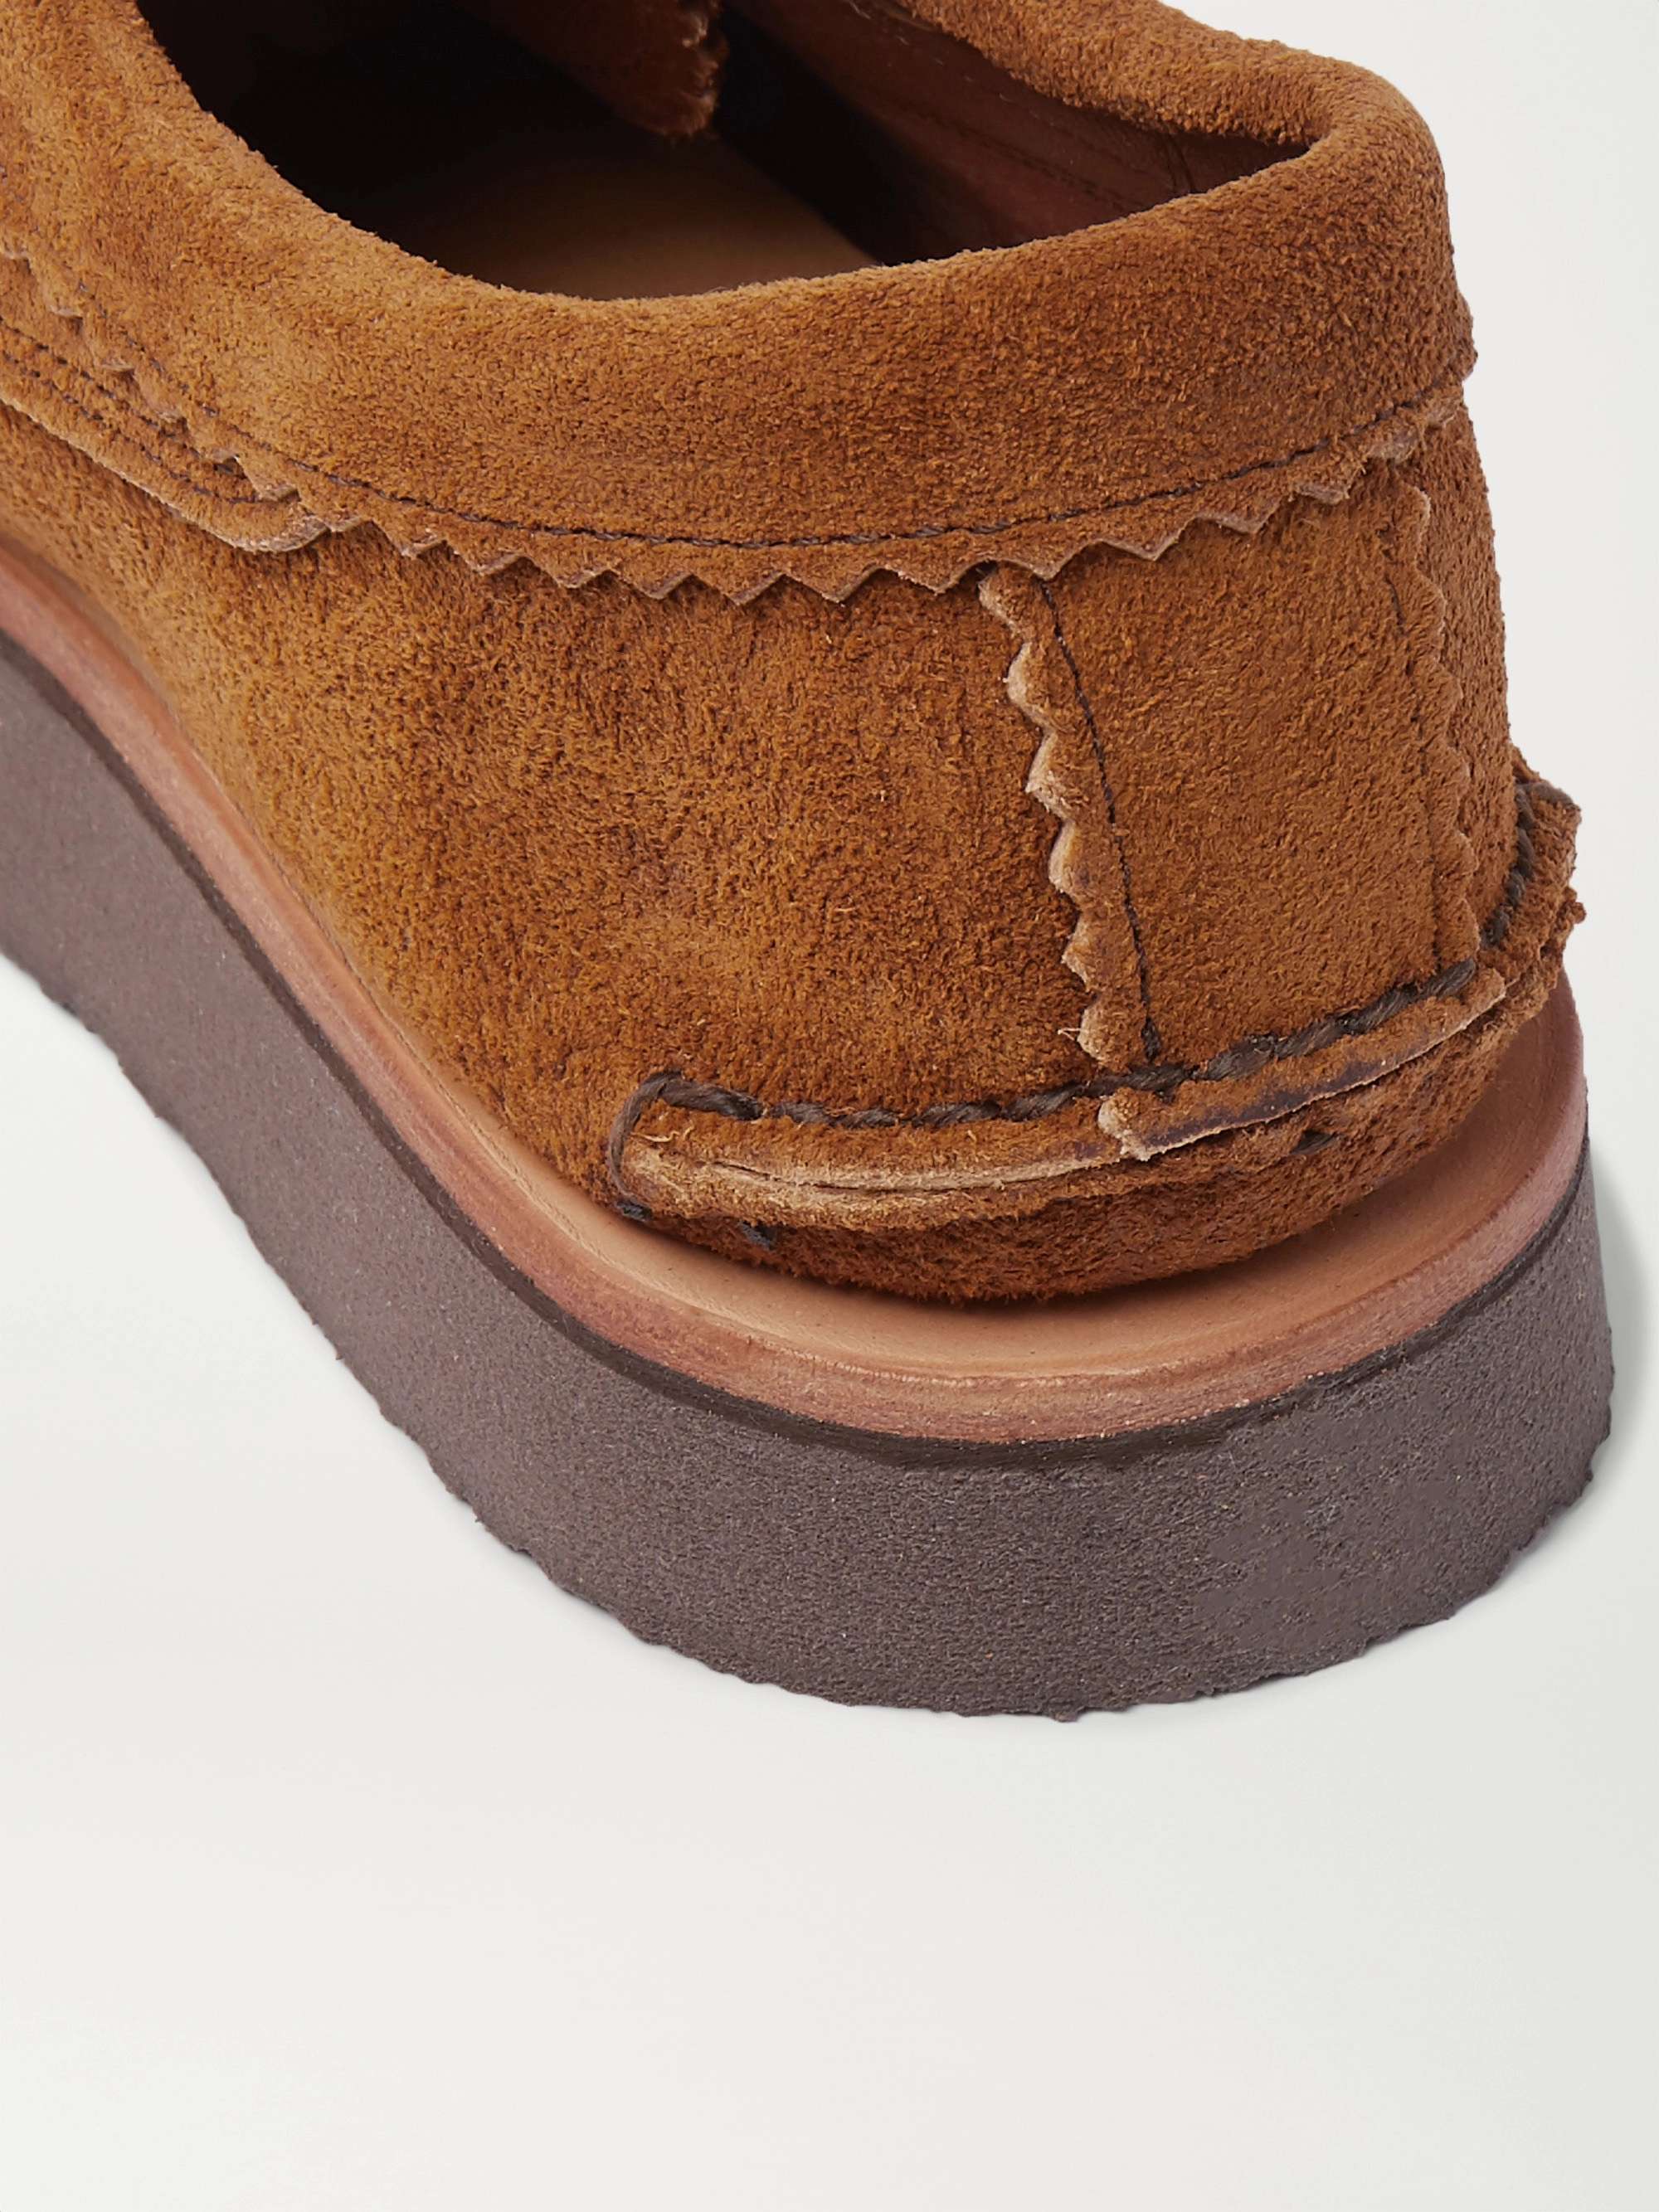 YUKETEN Blucher Rocker Textured-Leather Derby Shoes